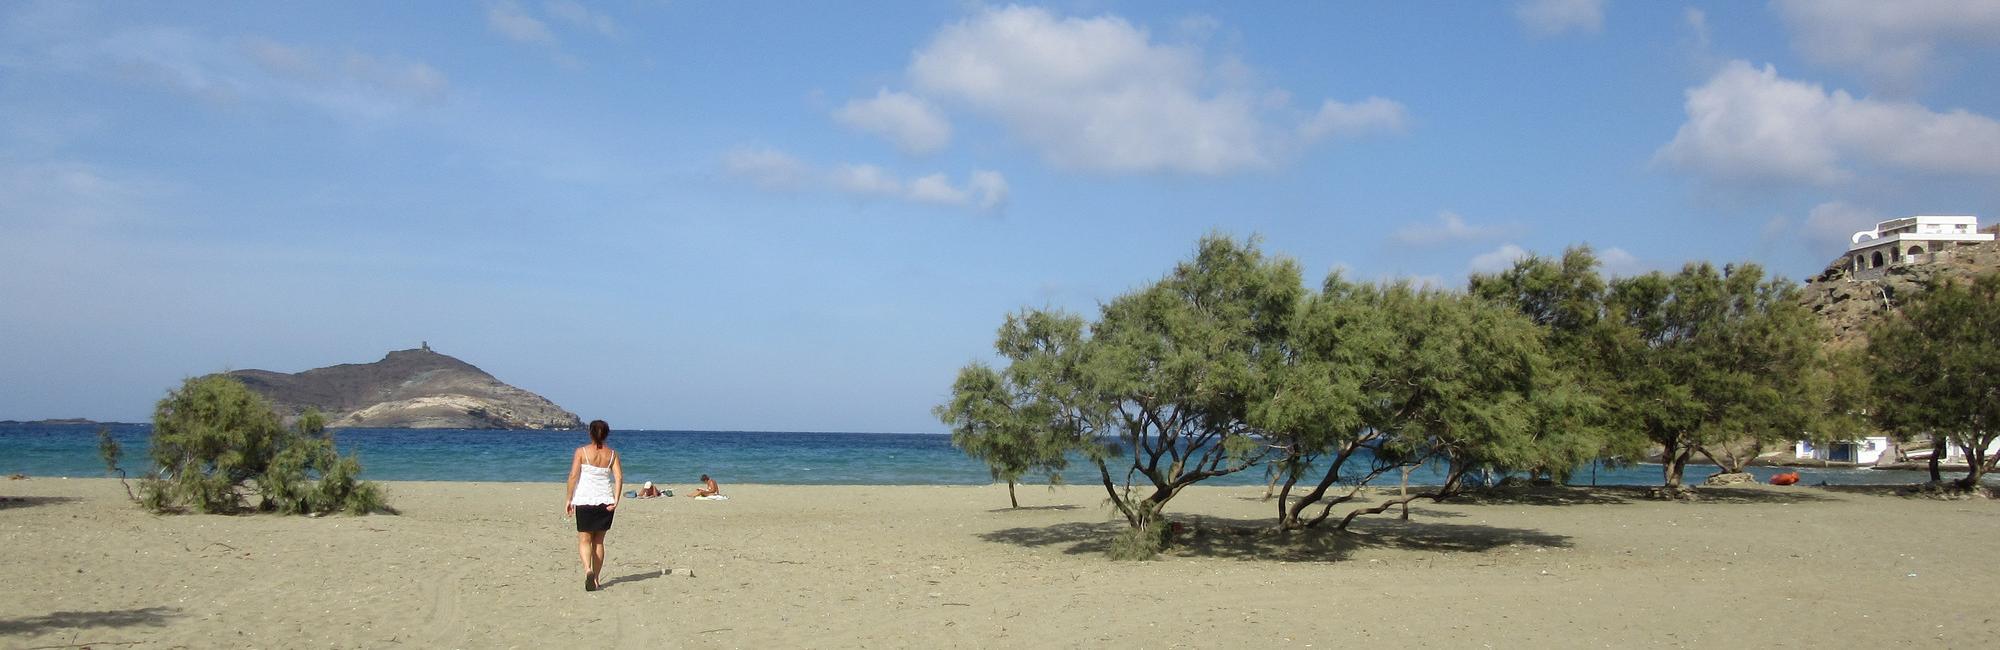 Tinos: beach